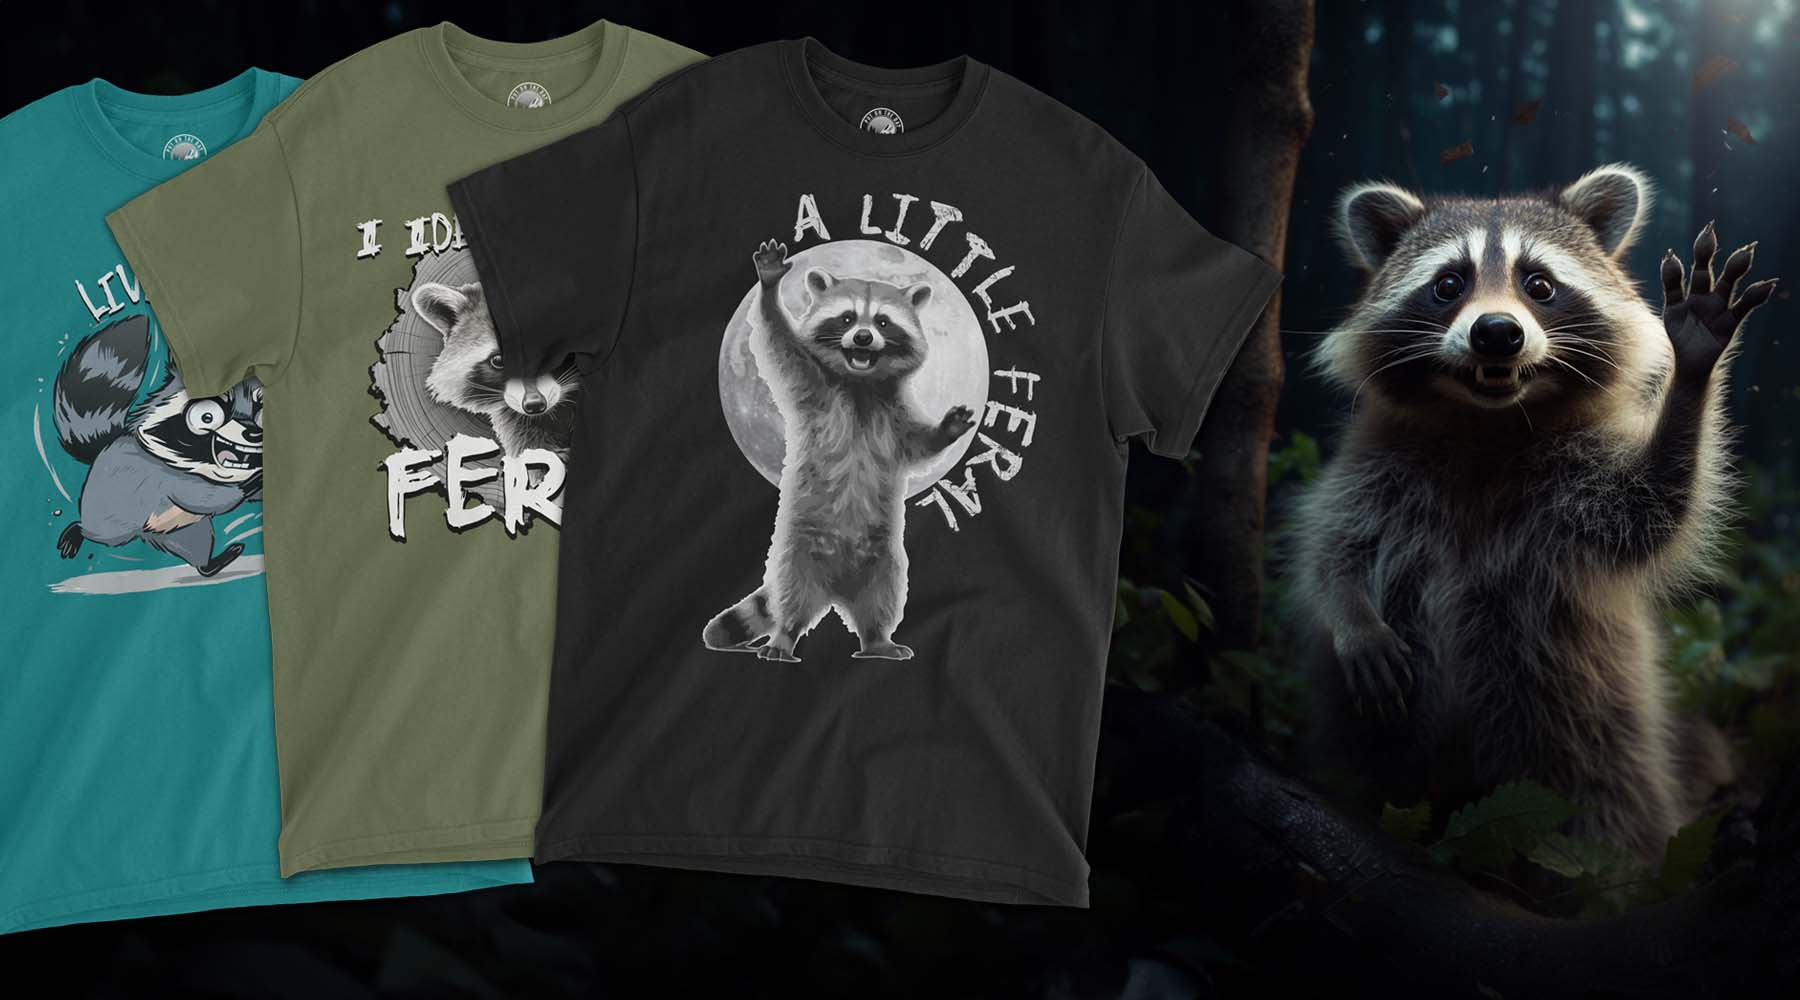 A raccoon waving, 3 tshirts featured